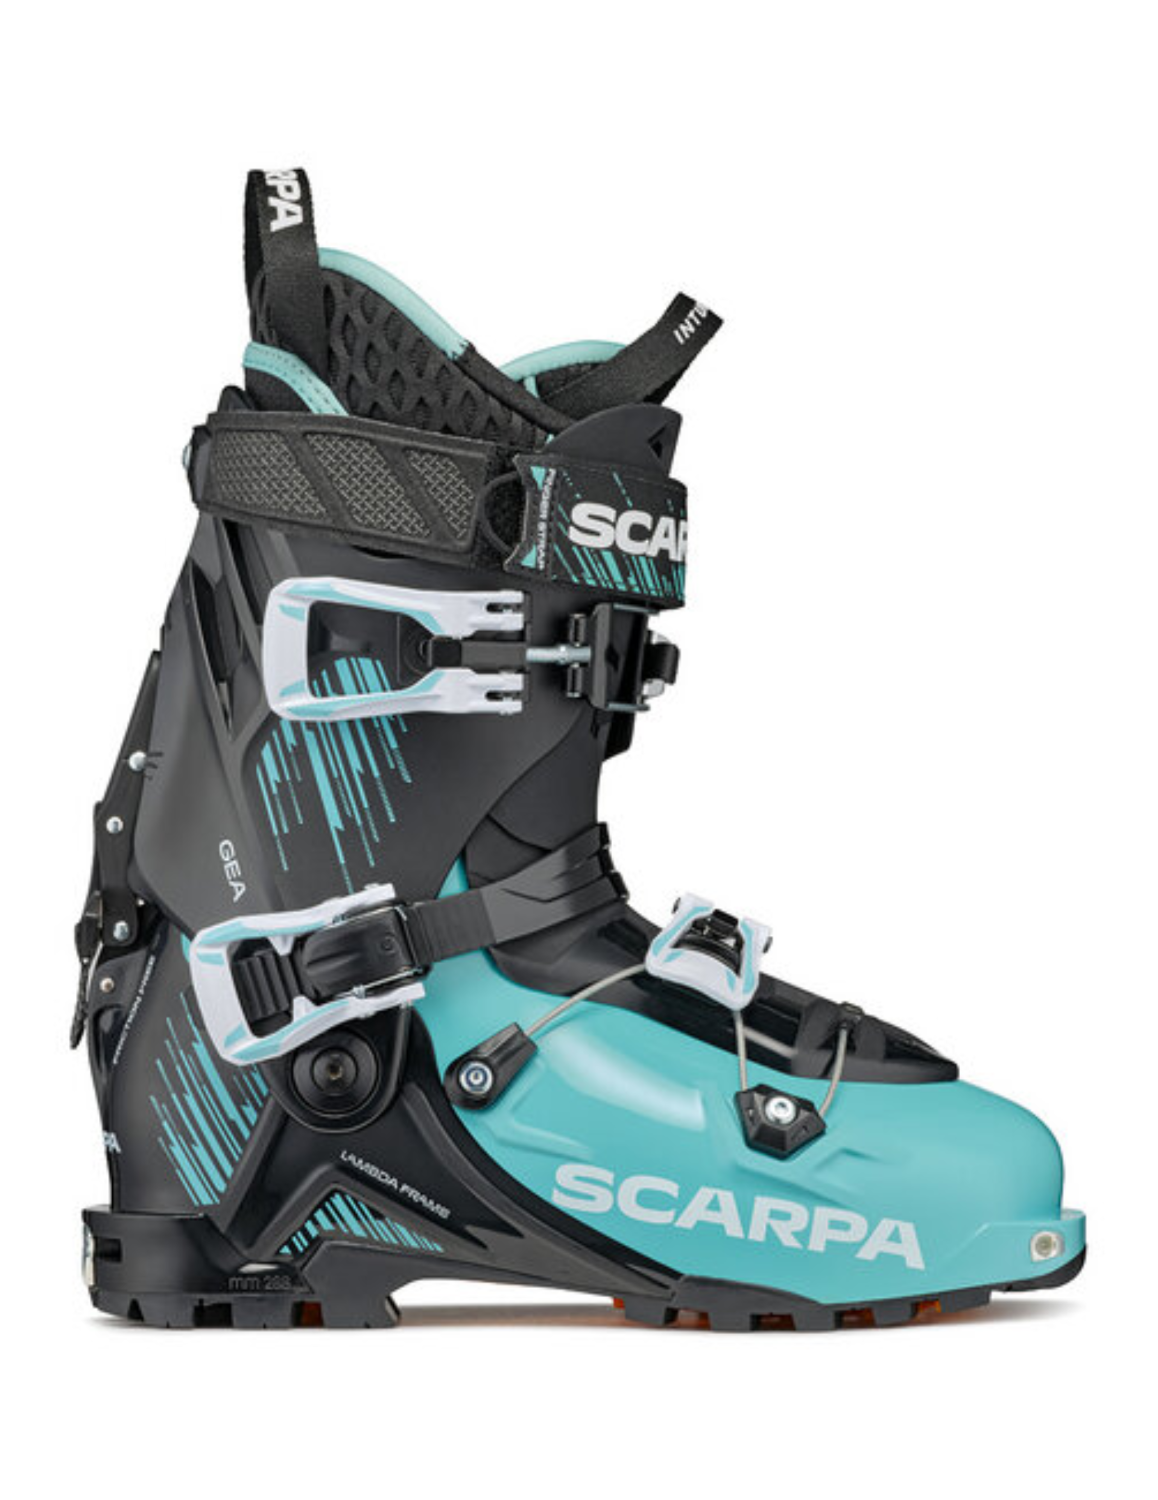 Chaussures de ski de randonnée SCARPA Gea pour femme